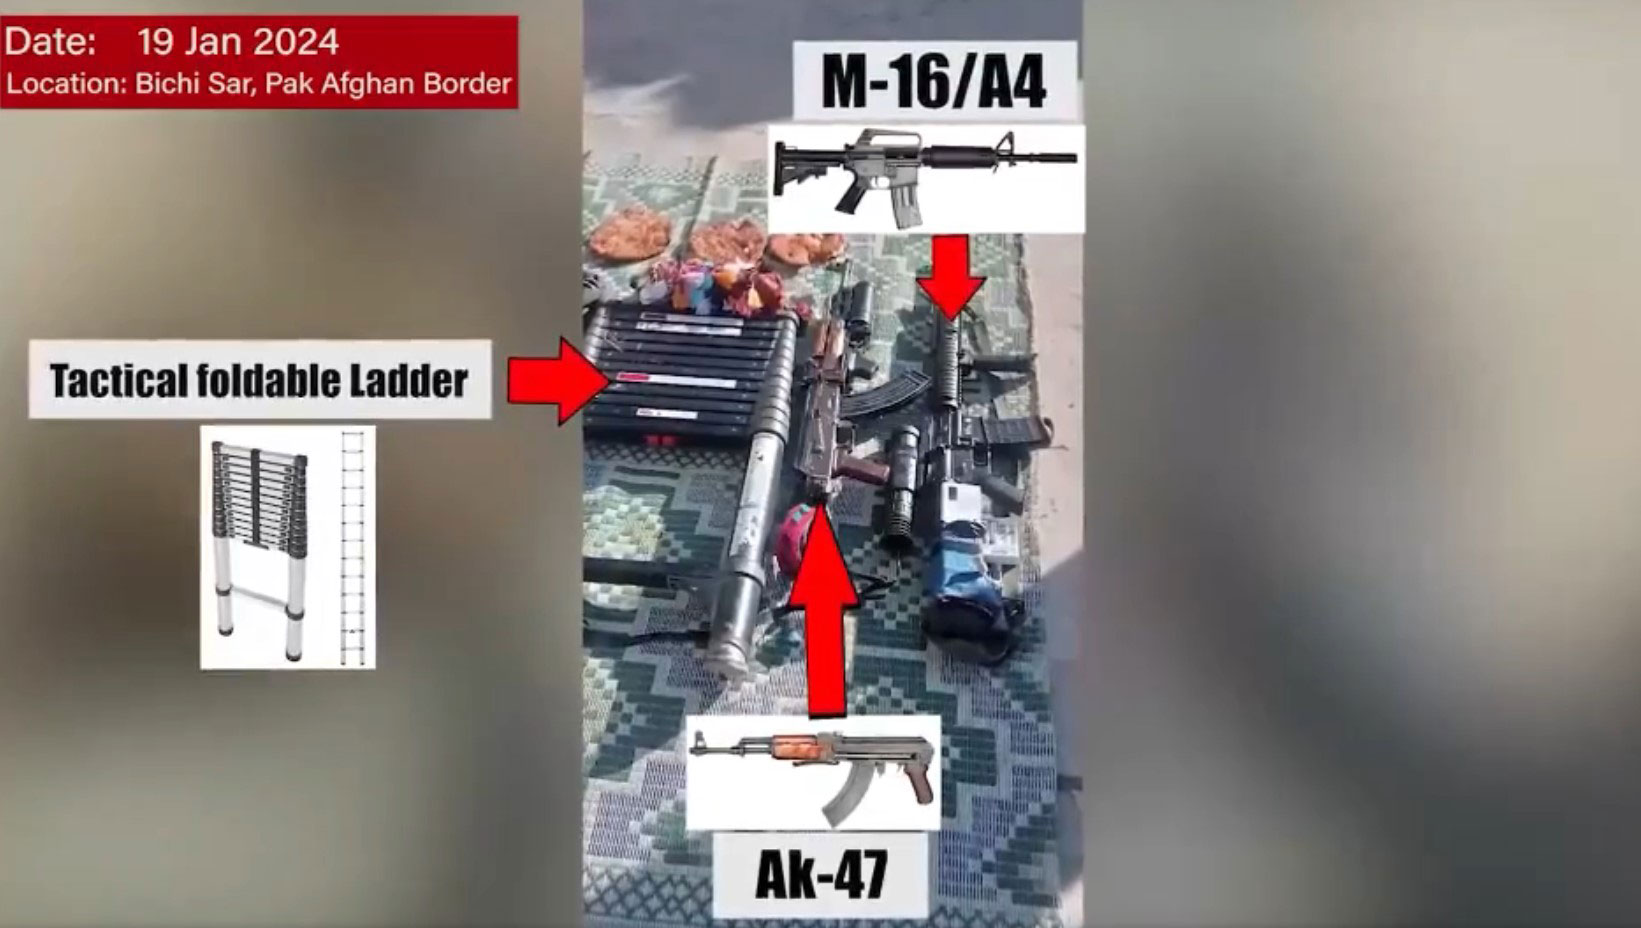 ایک تصویر جس میں دہشت گردوں سے ضبط کیے گئے مختلف ہتھیار، سامان دکھایا گیا ہے۔  - رپورٹر